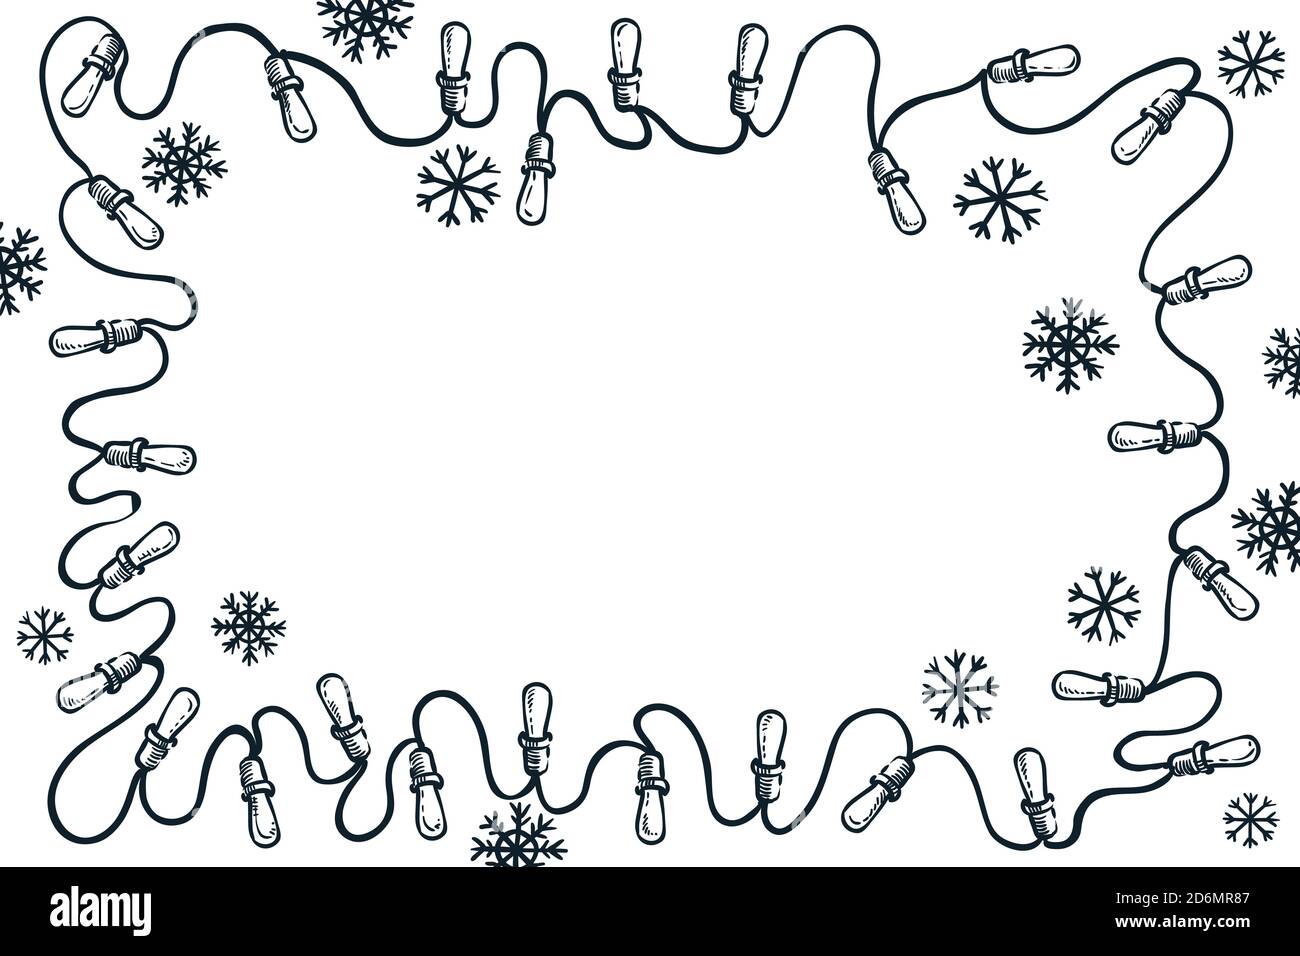 Girlande Lichter und Schneeflocken Rahmen, Vektor-Skizze Illustration. Weihnachten, Neujahr einfache Grußkarte Hintergrund mit Kopierplatz. Urlaub b Stock Vektor